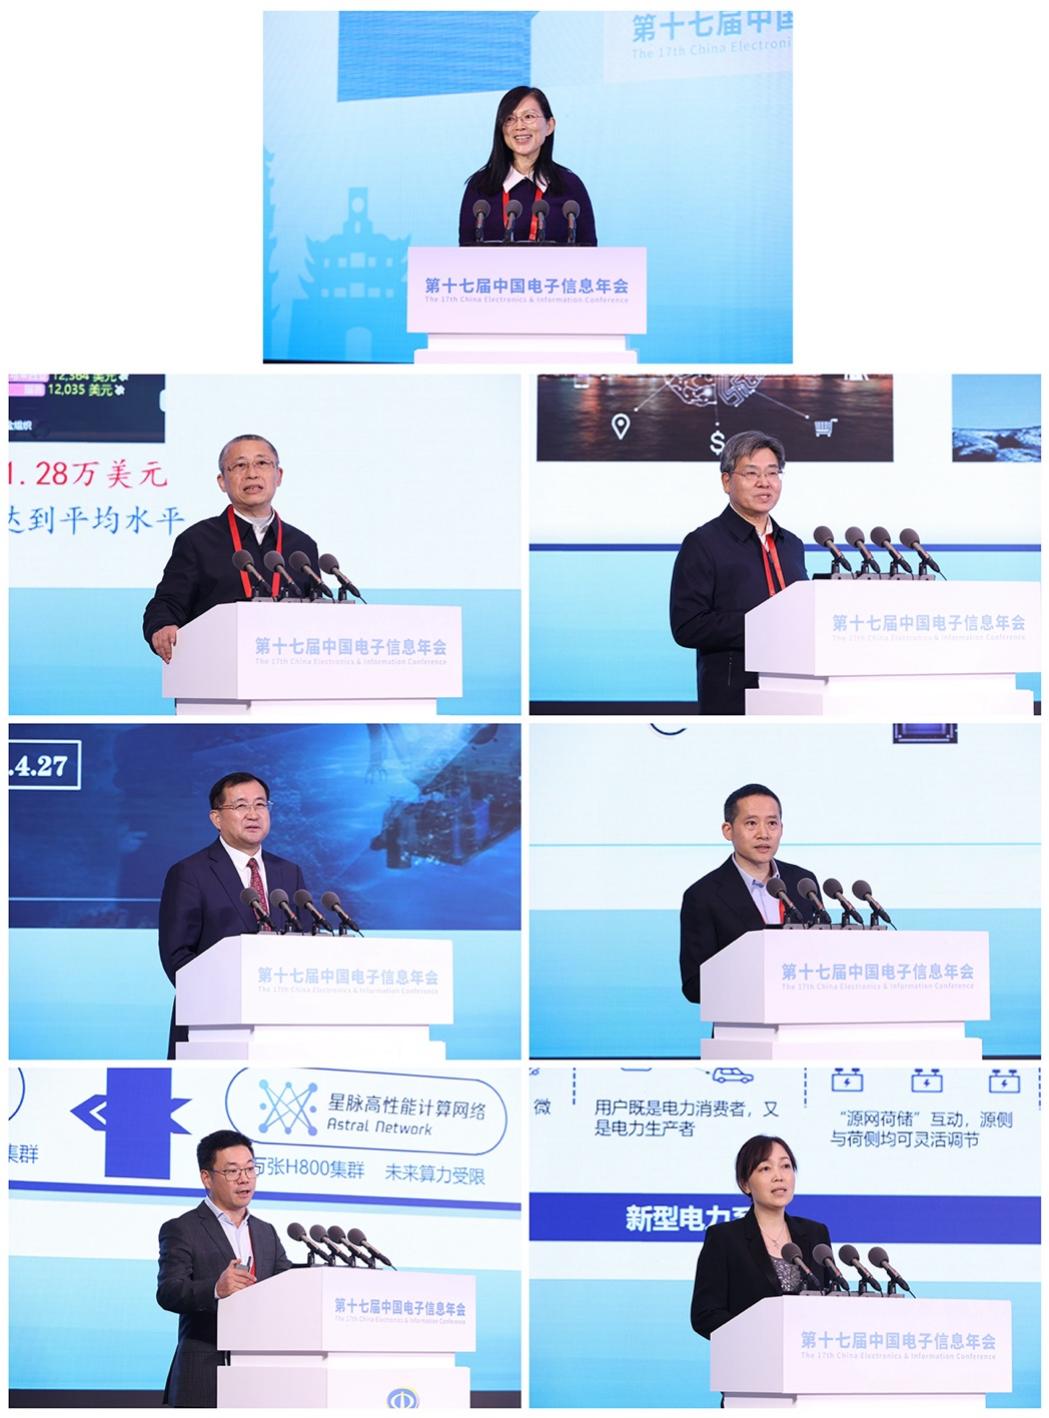 助力电子信息产业高质量发展 第十七届中国电子信息年会在宁波召开